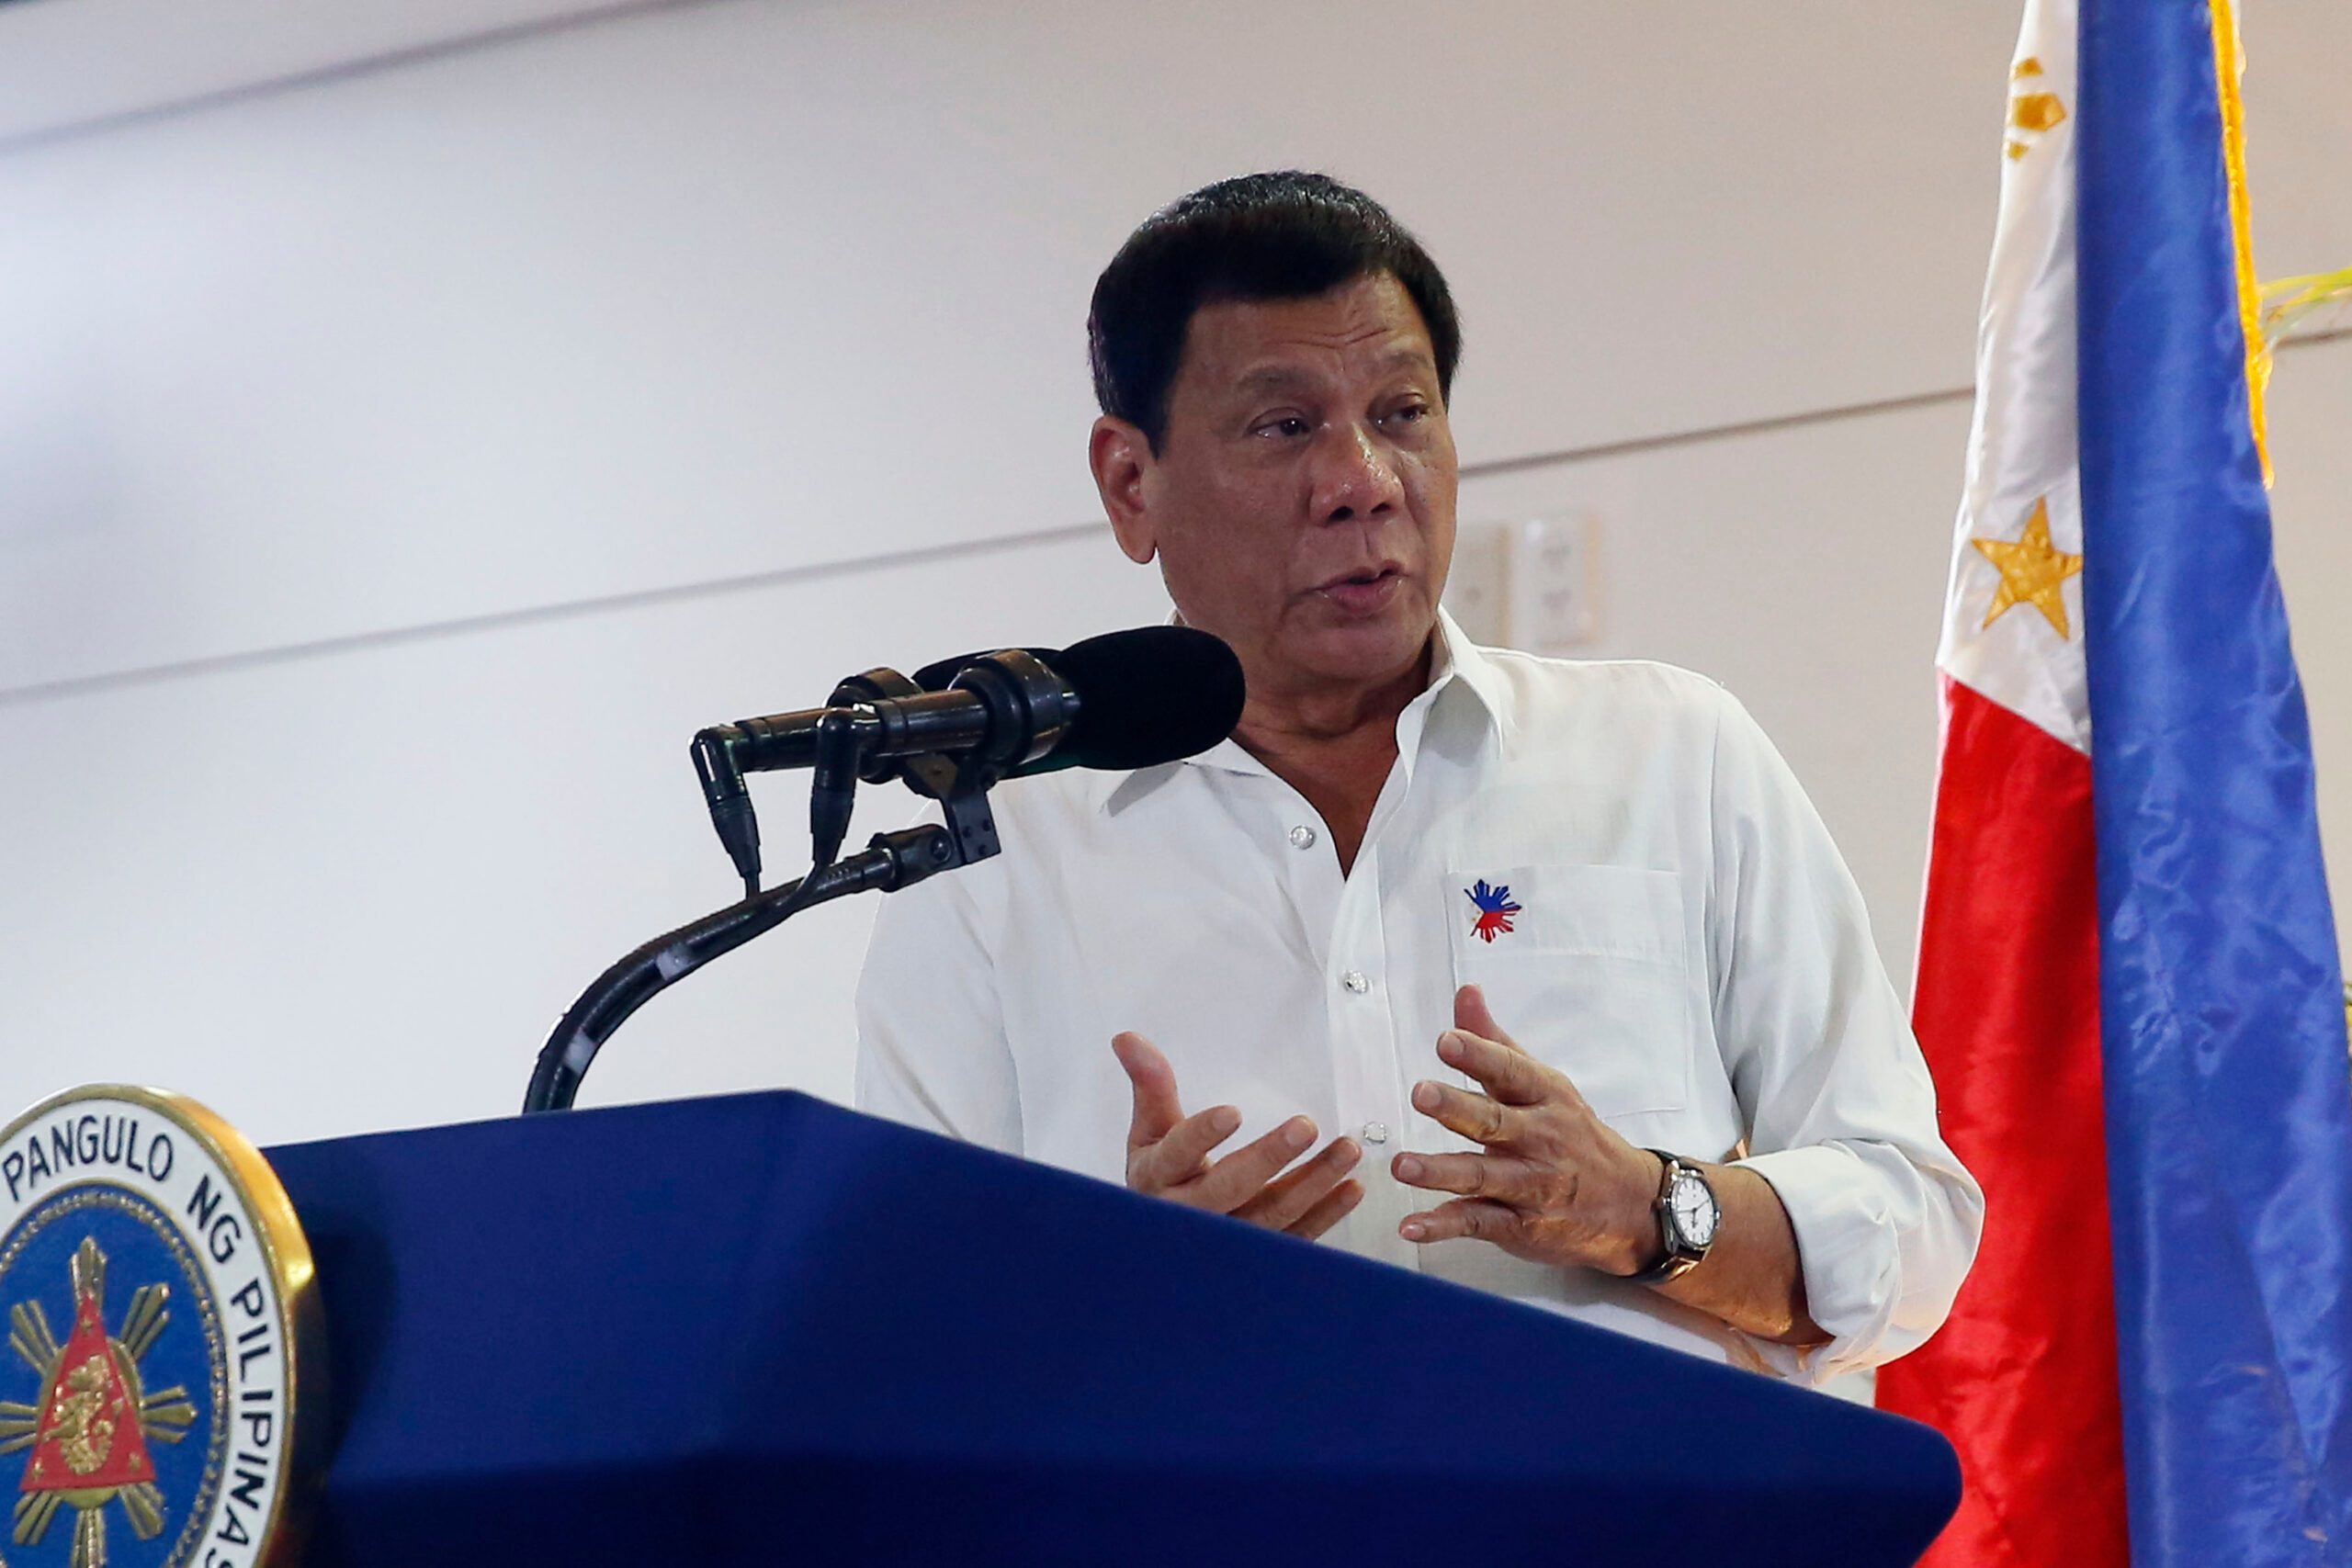 Duterte says sorry for ‘unintended’ drug war killings